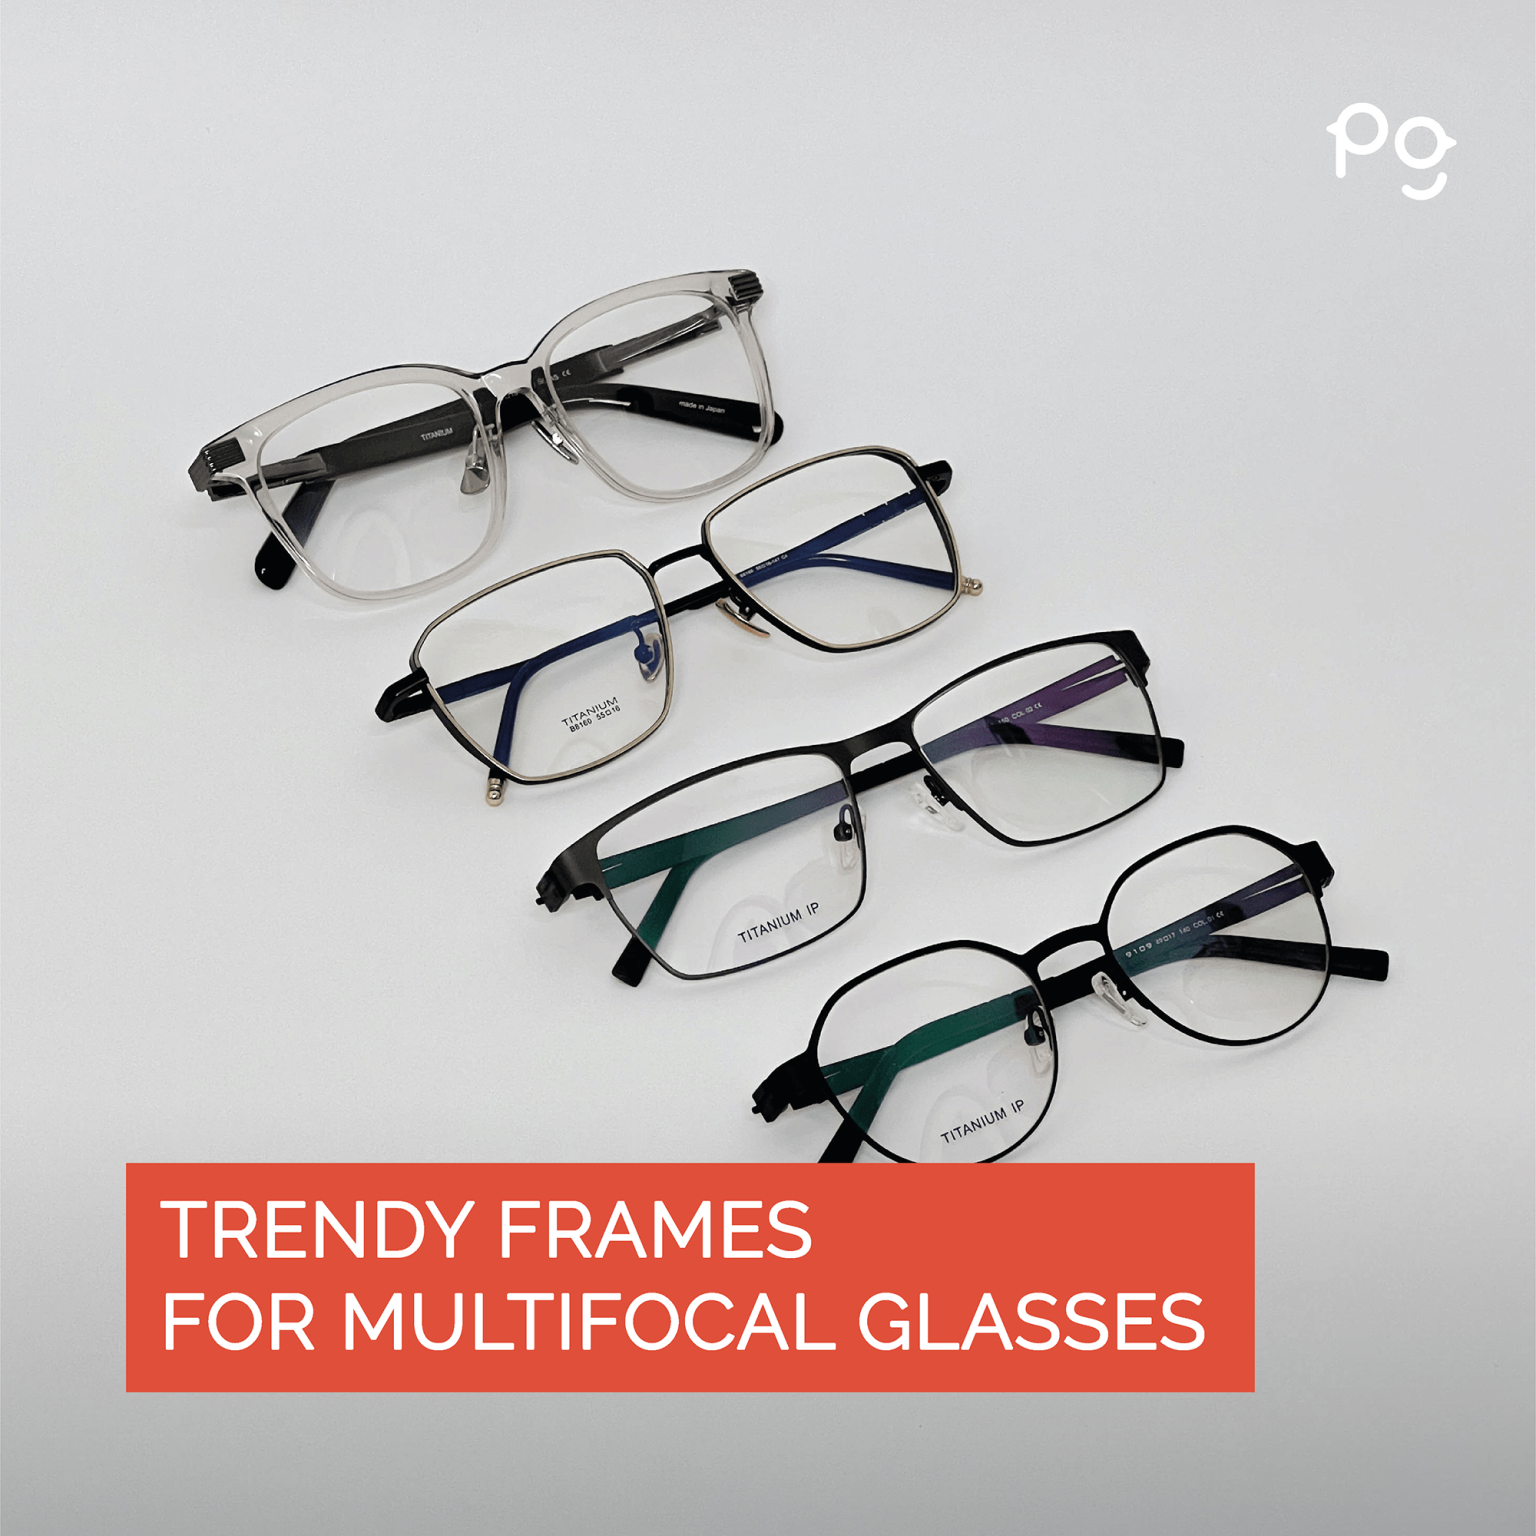 Frames for multifocal lenses